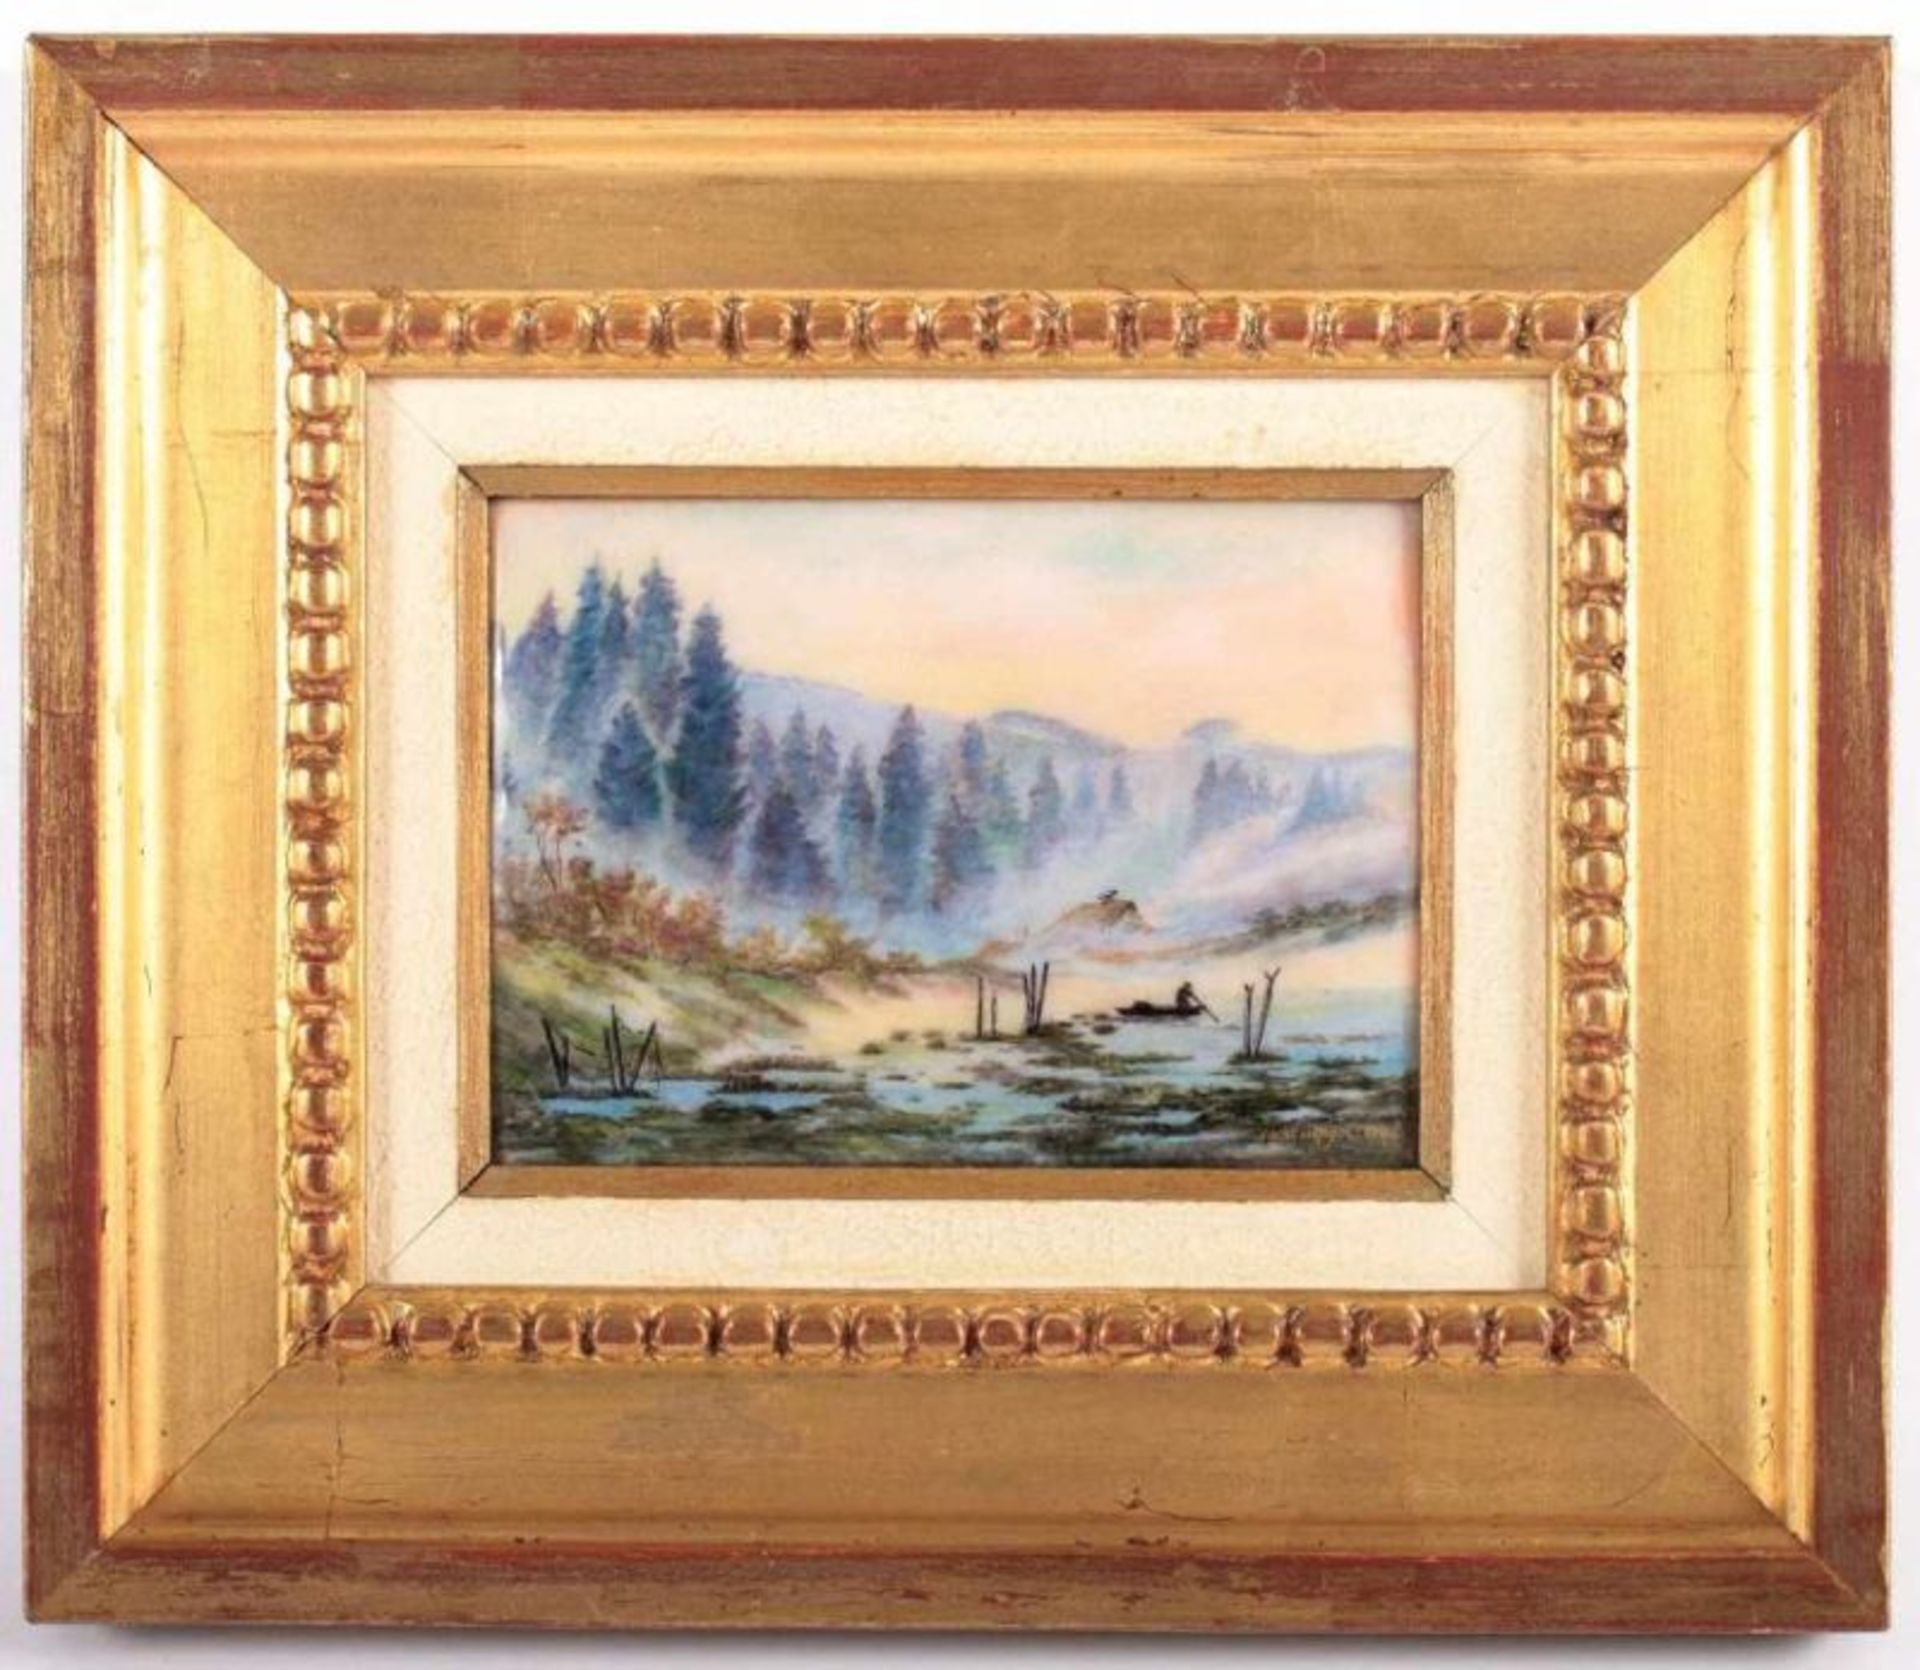 EMAILBILD, "Landschaft", 11 x 14,5, sign. Camille FAURÉ, LIMOGES, um 1920 22.00 % buyer's premium on - Bild 2 aus 2